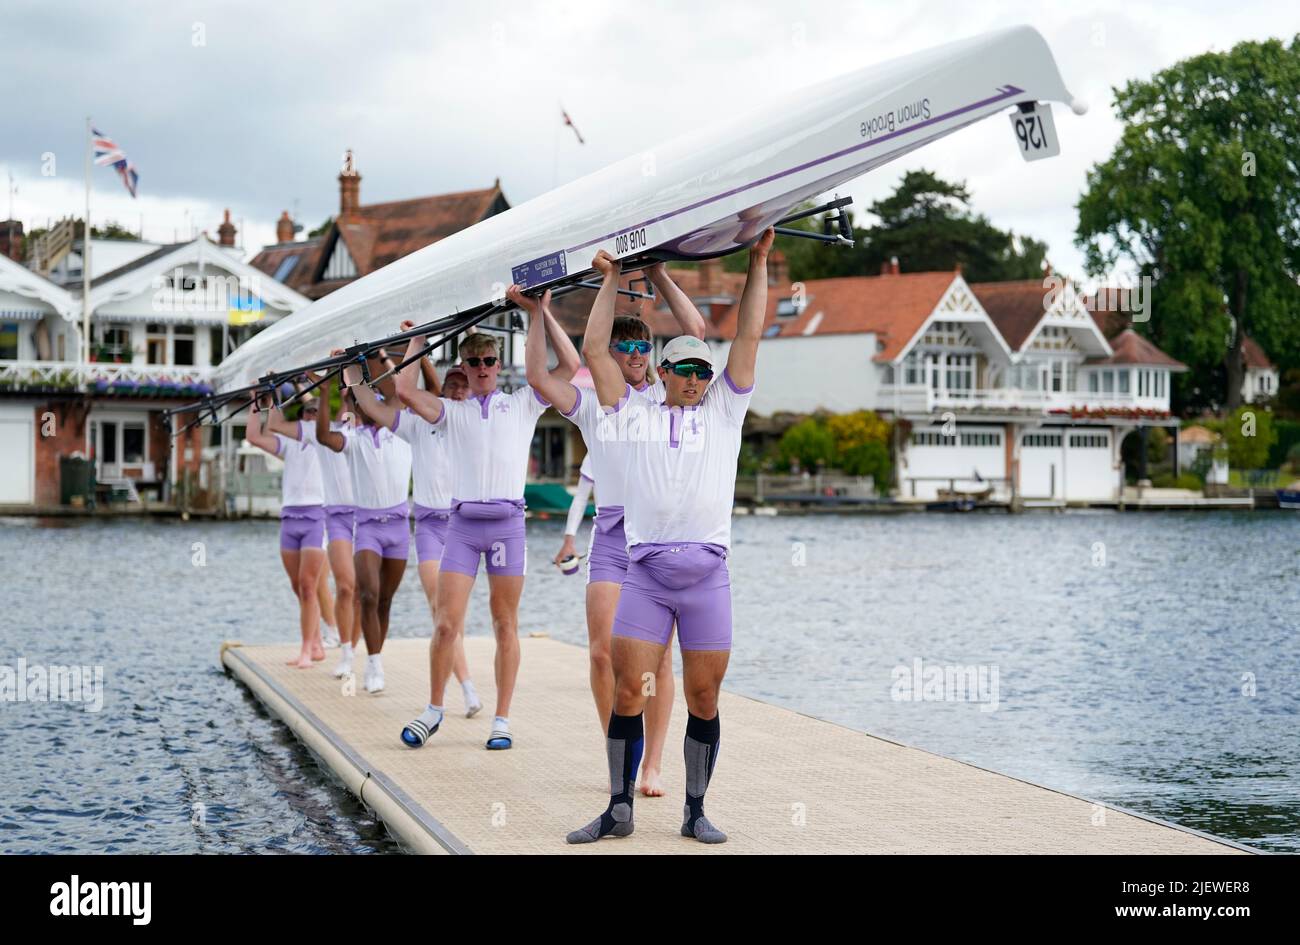 Mitglieder der Durham University „A“ tragen ihr Boot zurück zum Bootshaus, nachdem sie am Eröffnungstag der Henley Royal Regatta 2022 an der Themse teilnehmen. Bilddatum: Dienstag, 28. Juni 2022. Stockfoto